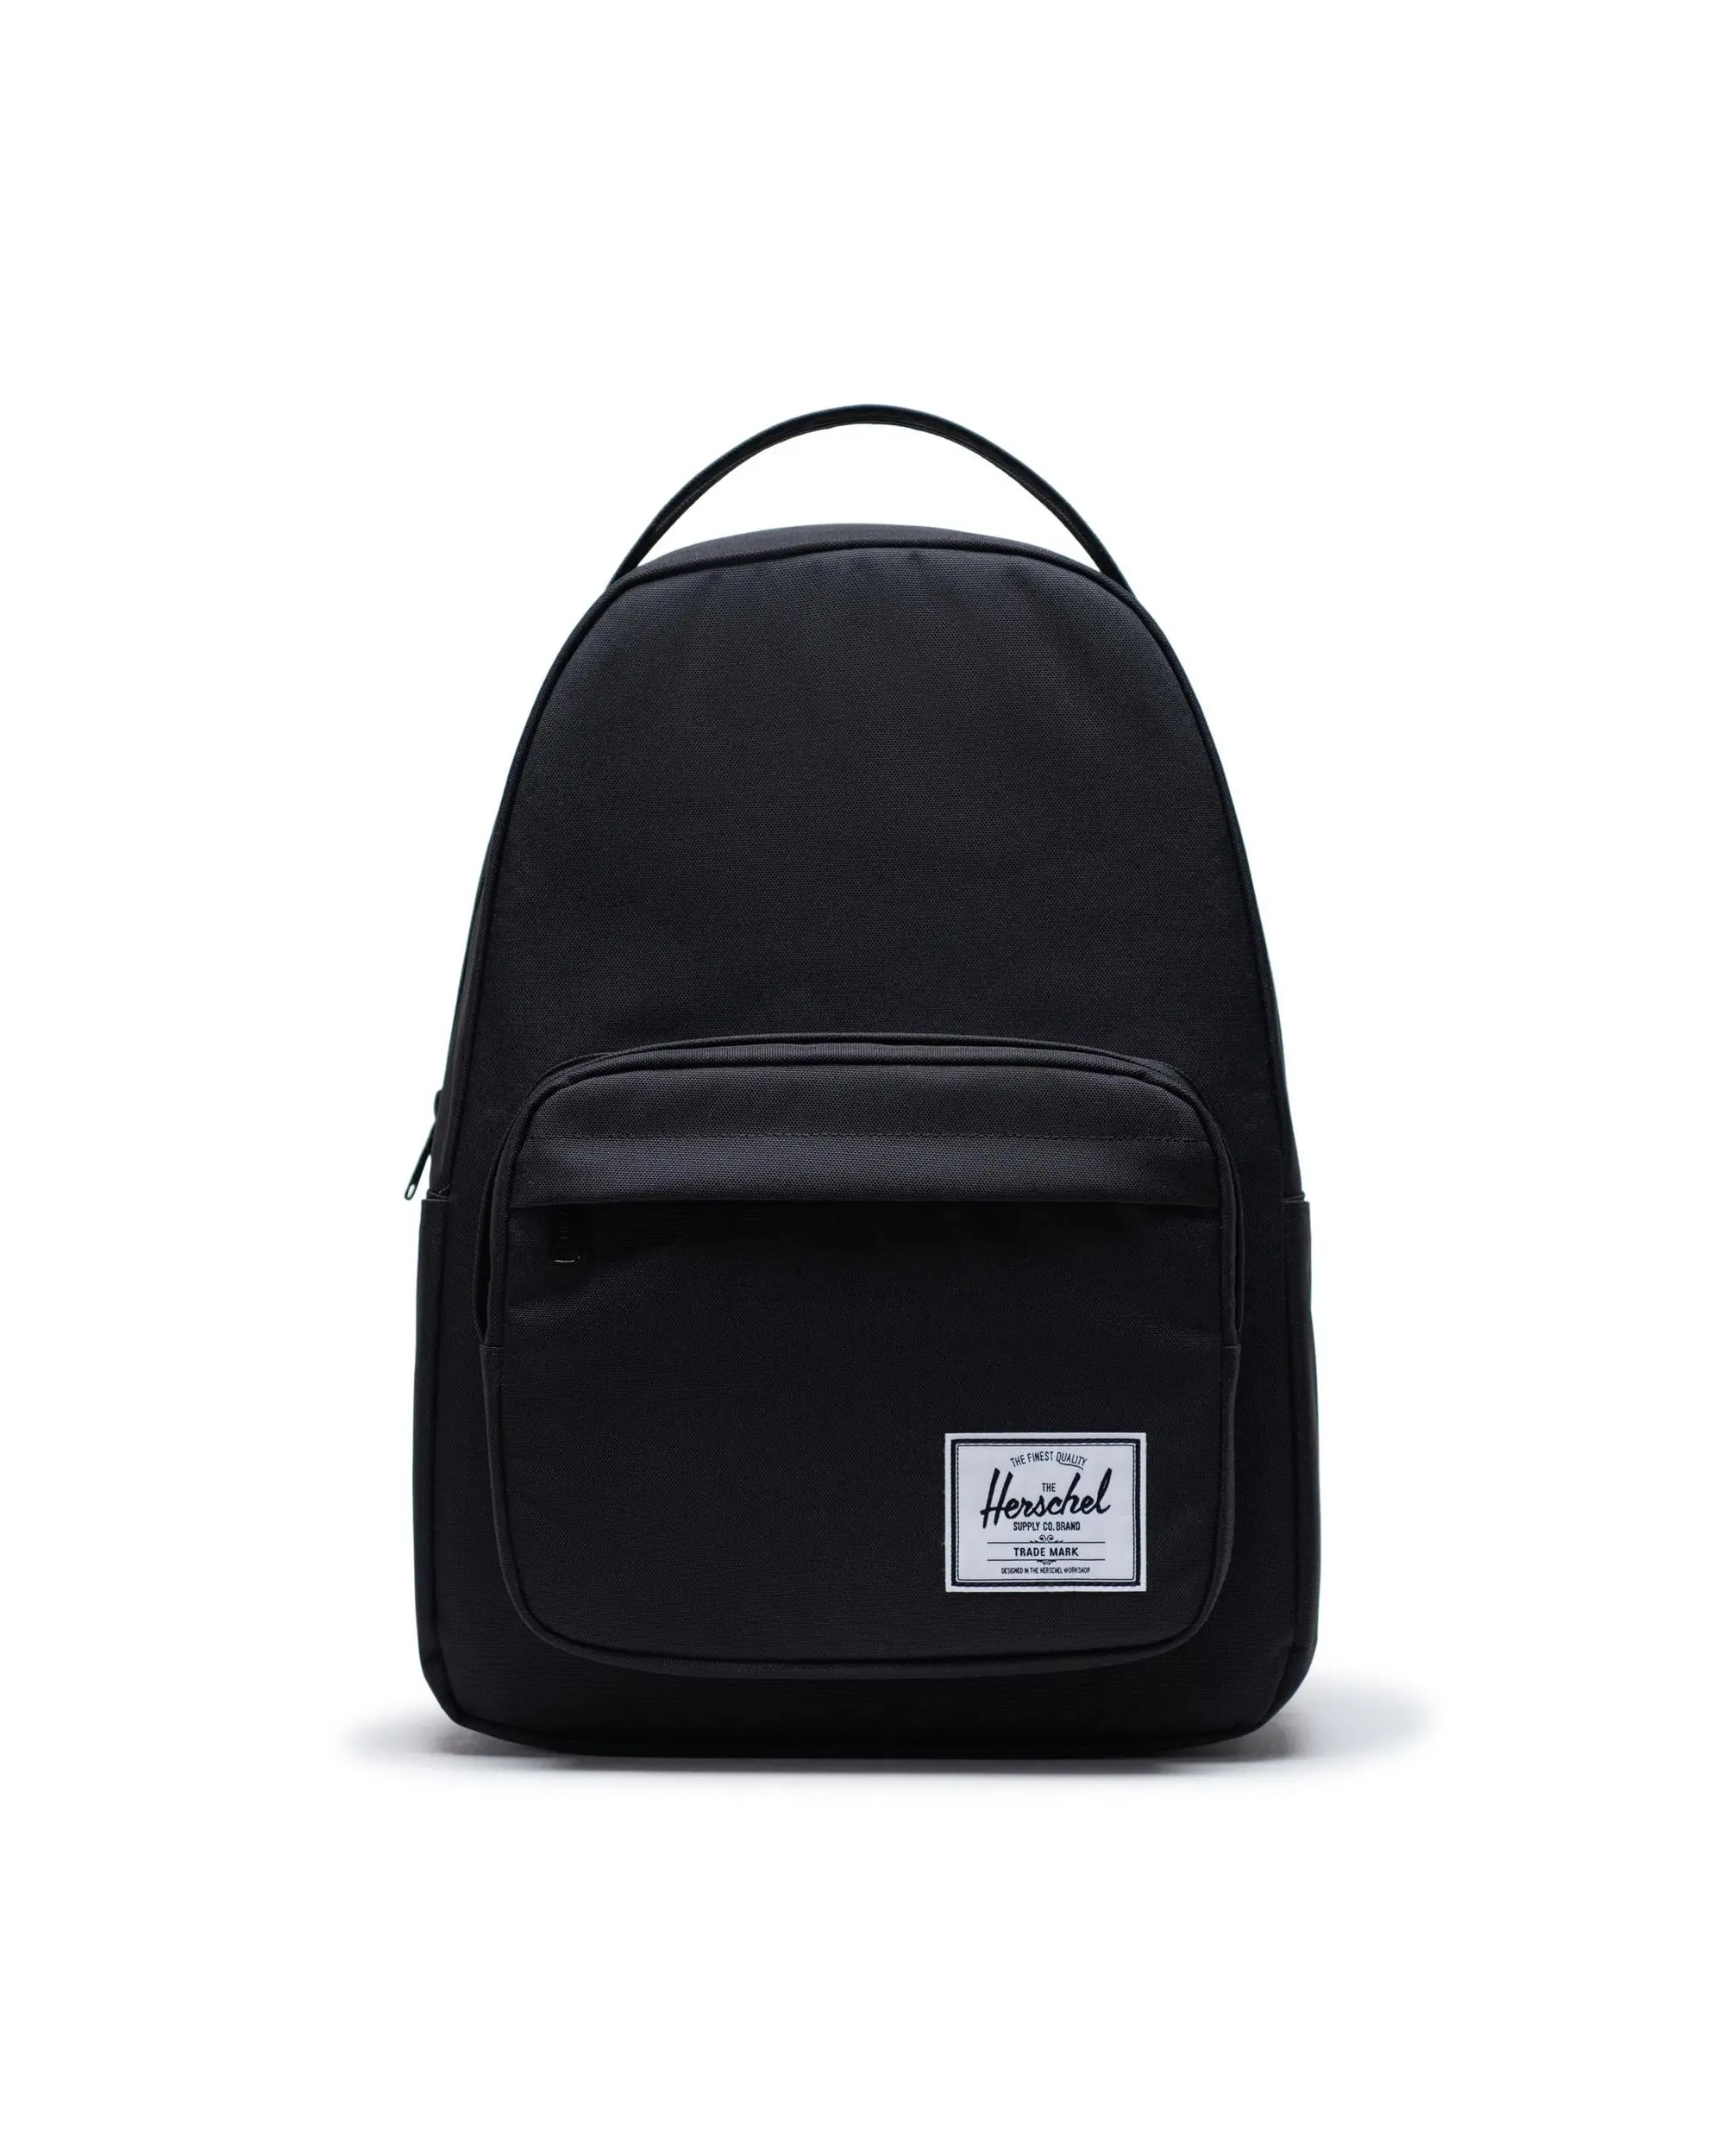 Miller Backpack Striped Liner 32L | Herschel Supply Co.